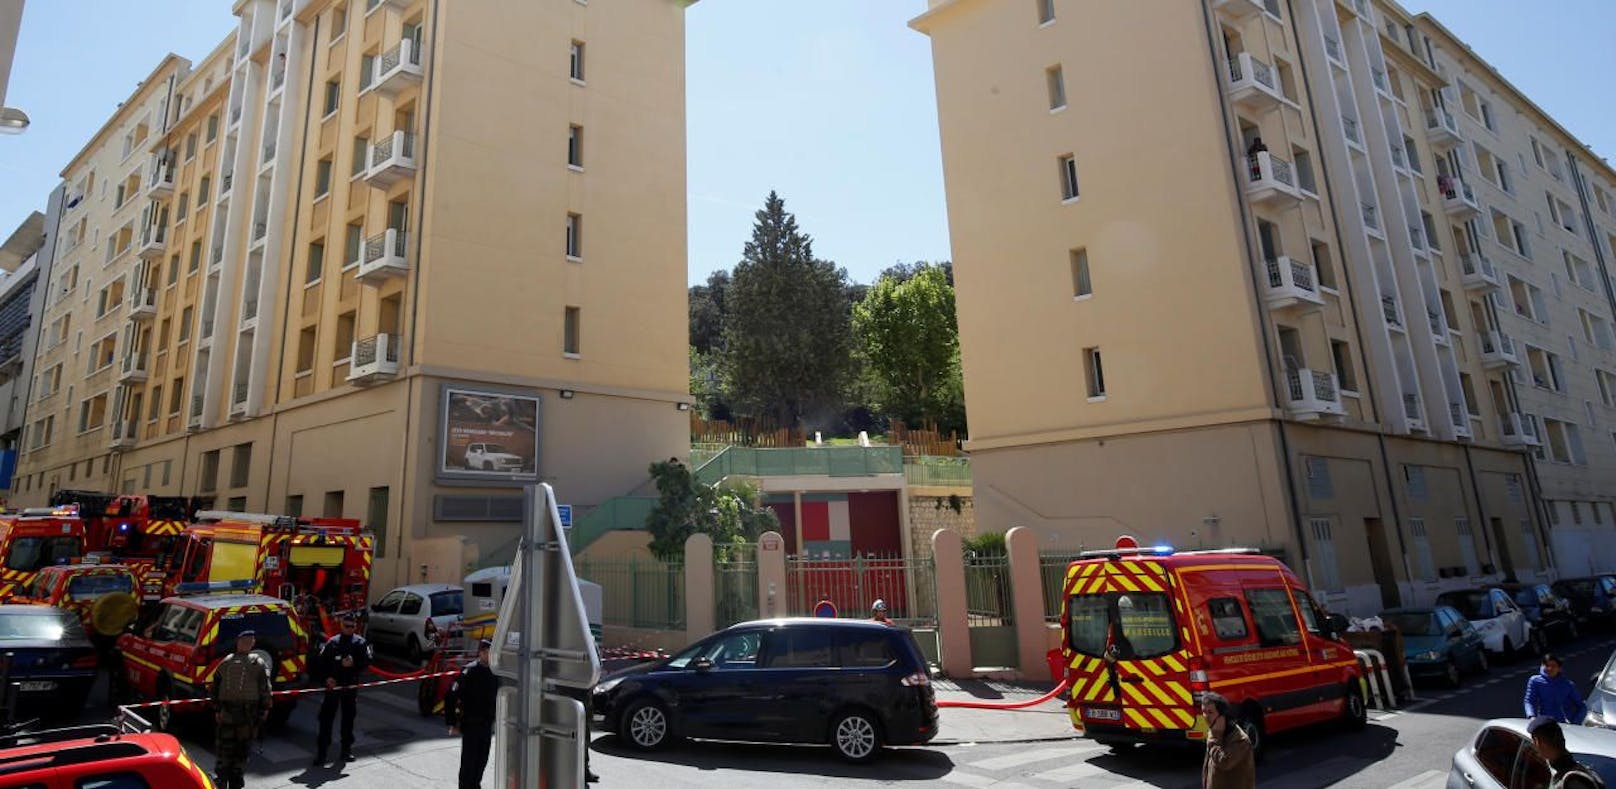 Razzia: 3 Kilo Sprengstoff und IS-Fahne in Marseille